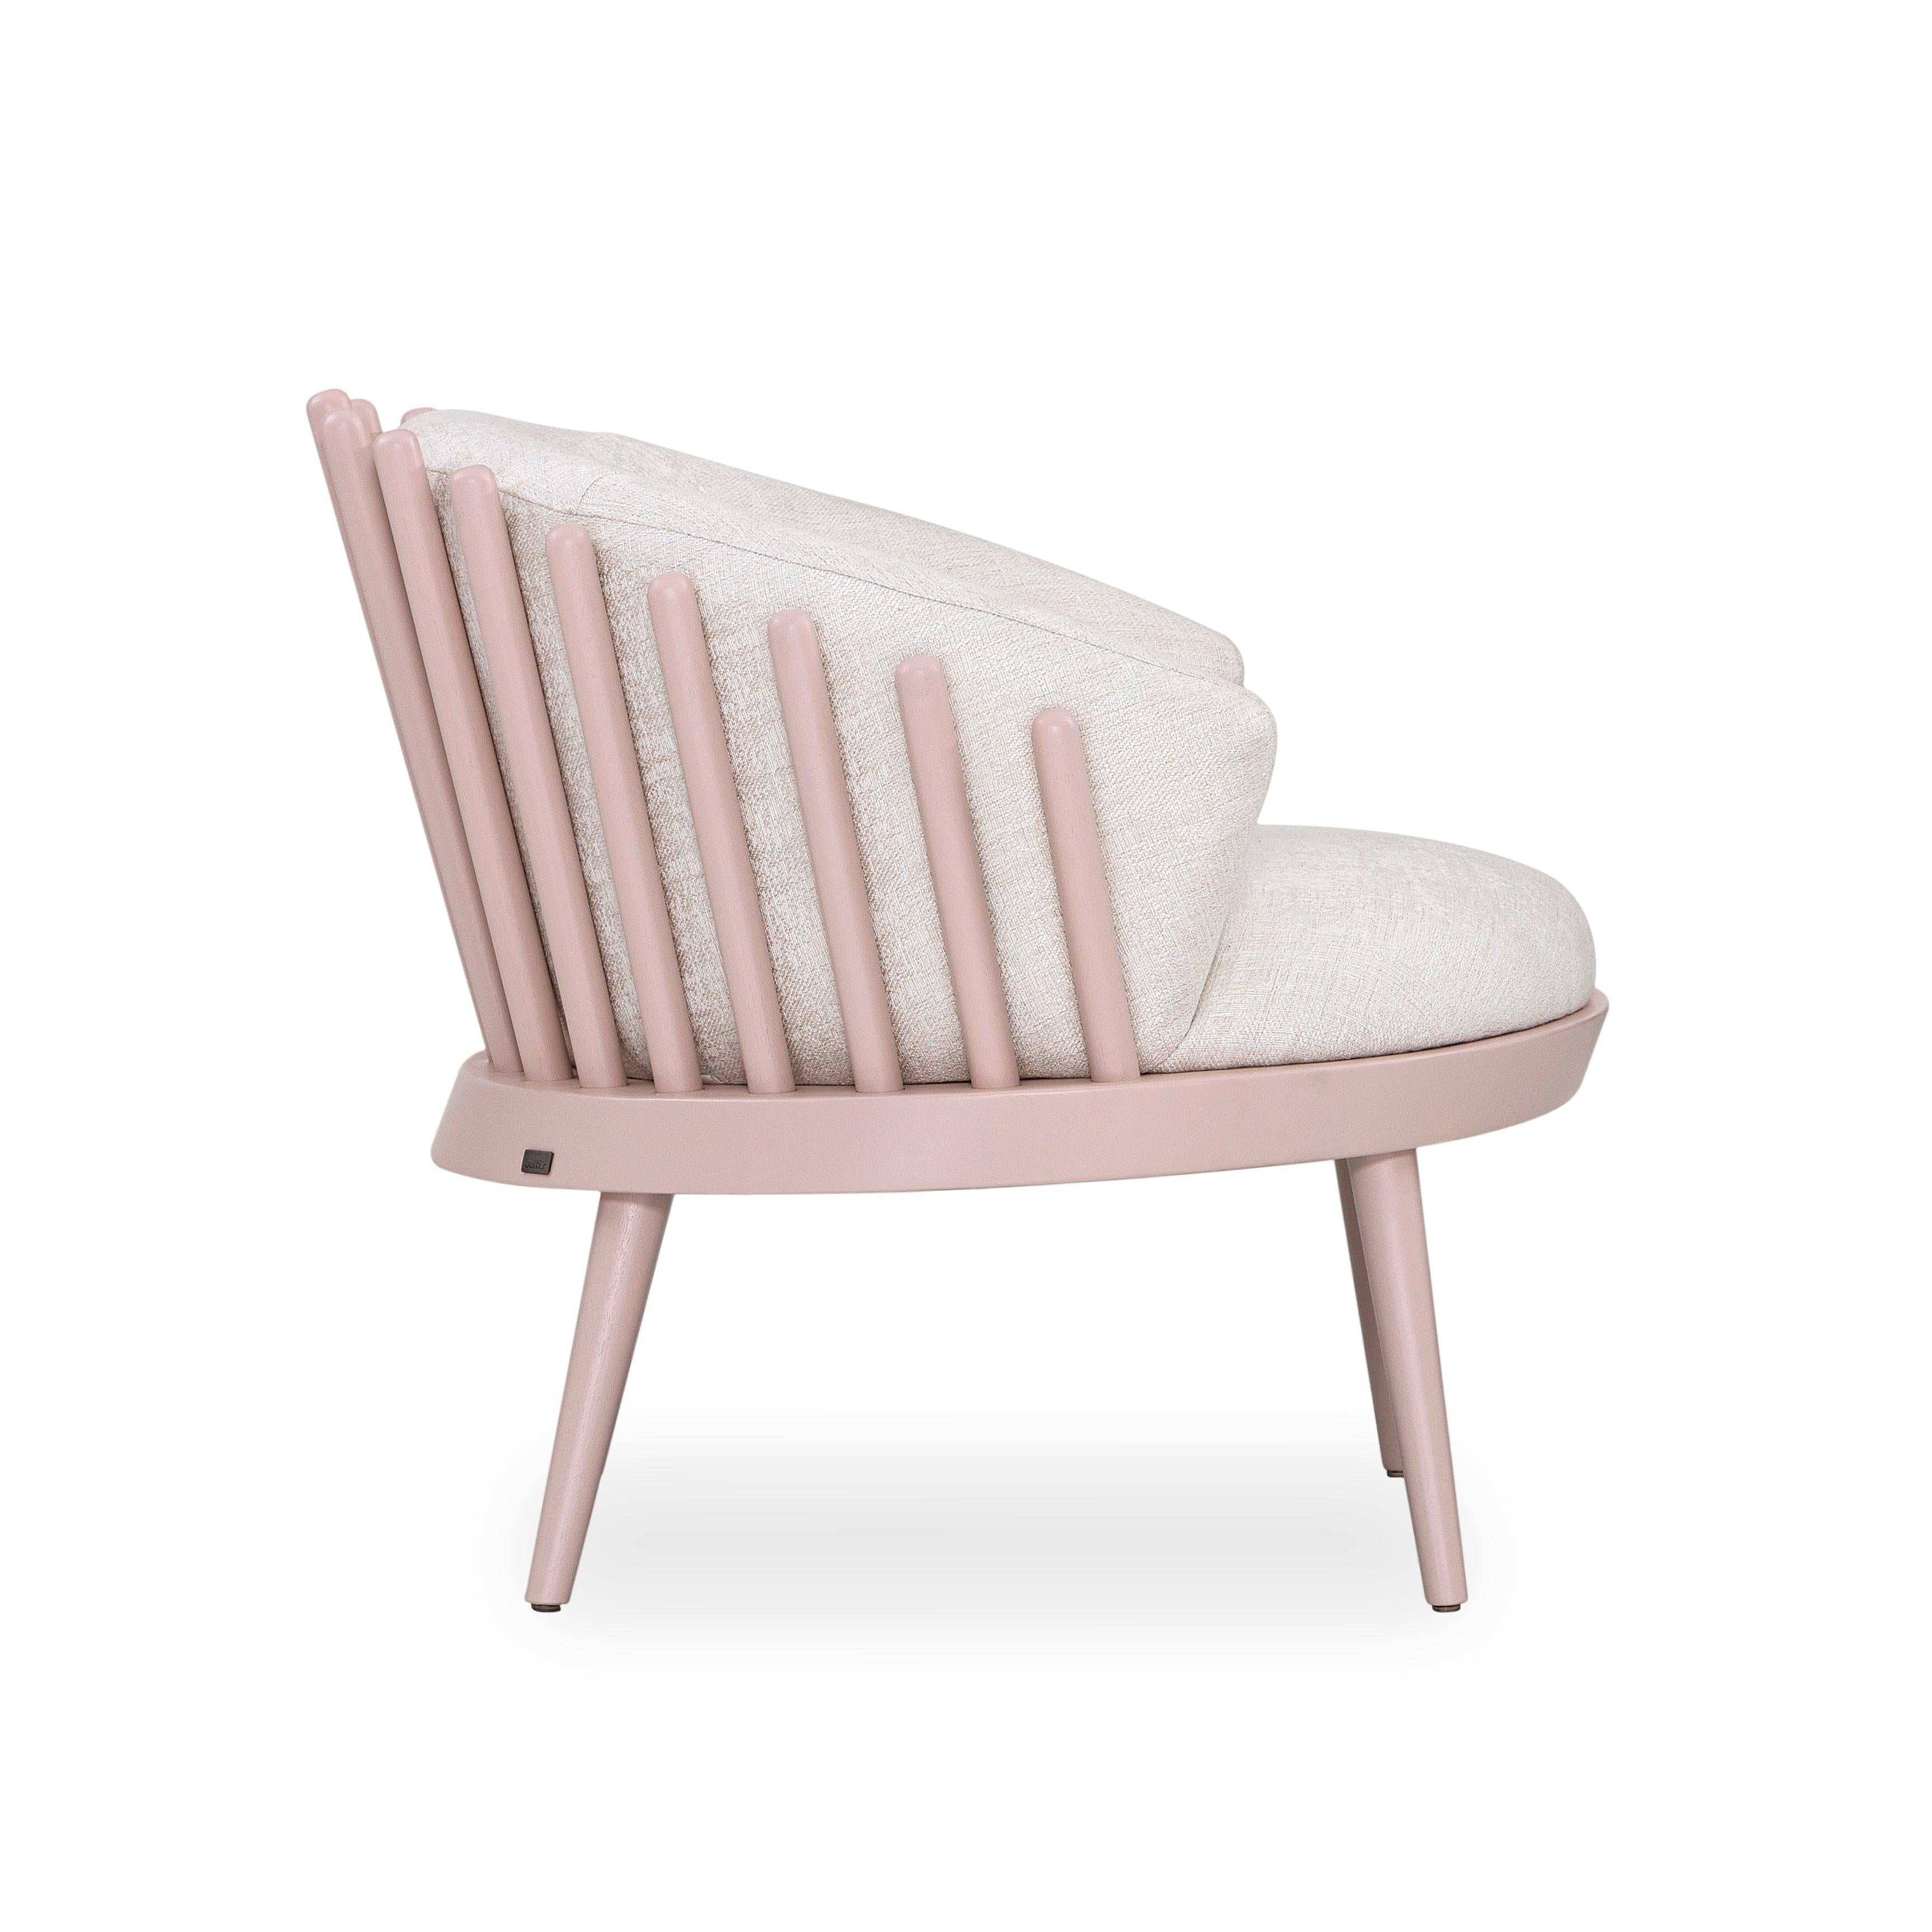 L'équipe de designers d'Uultis a créé ce magnifique fauteuil Fane, revêtu d'un beau et doux tissu blanc cassé, agrémenté d'une finition en bois de quartz. Cette magnifique création offrira un espace confortable parfait avec son assise et son dossier